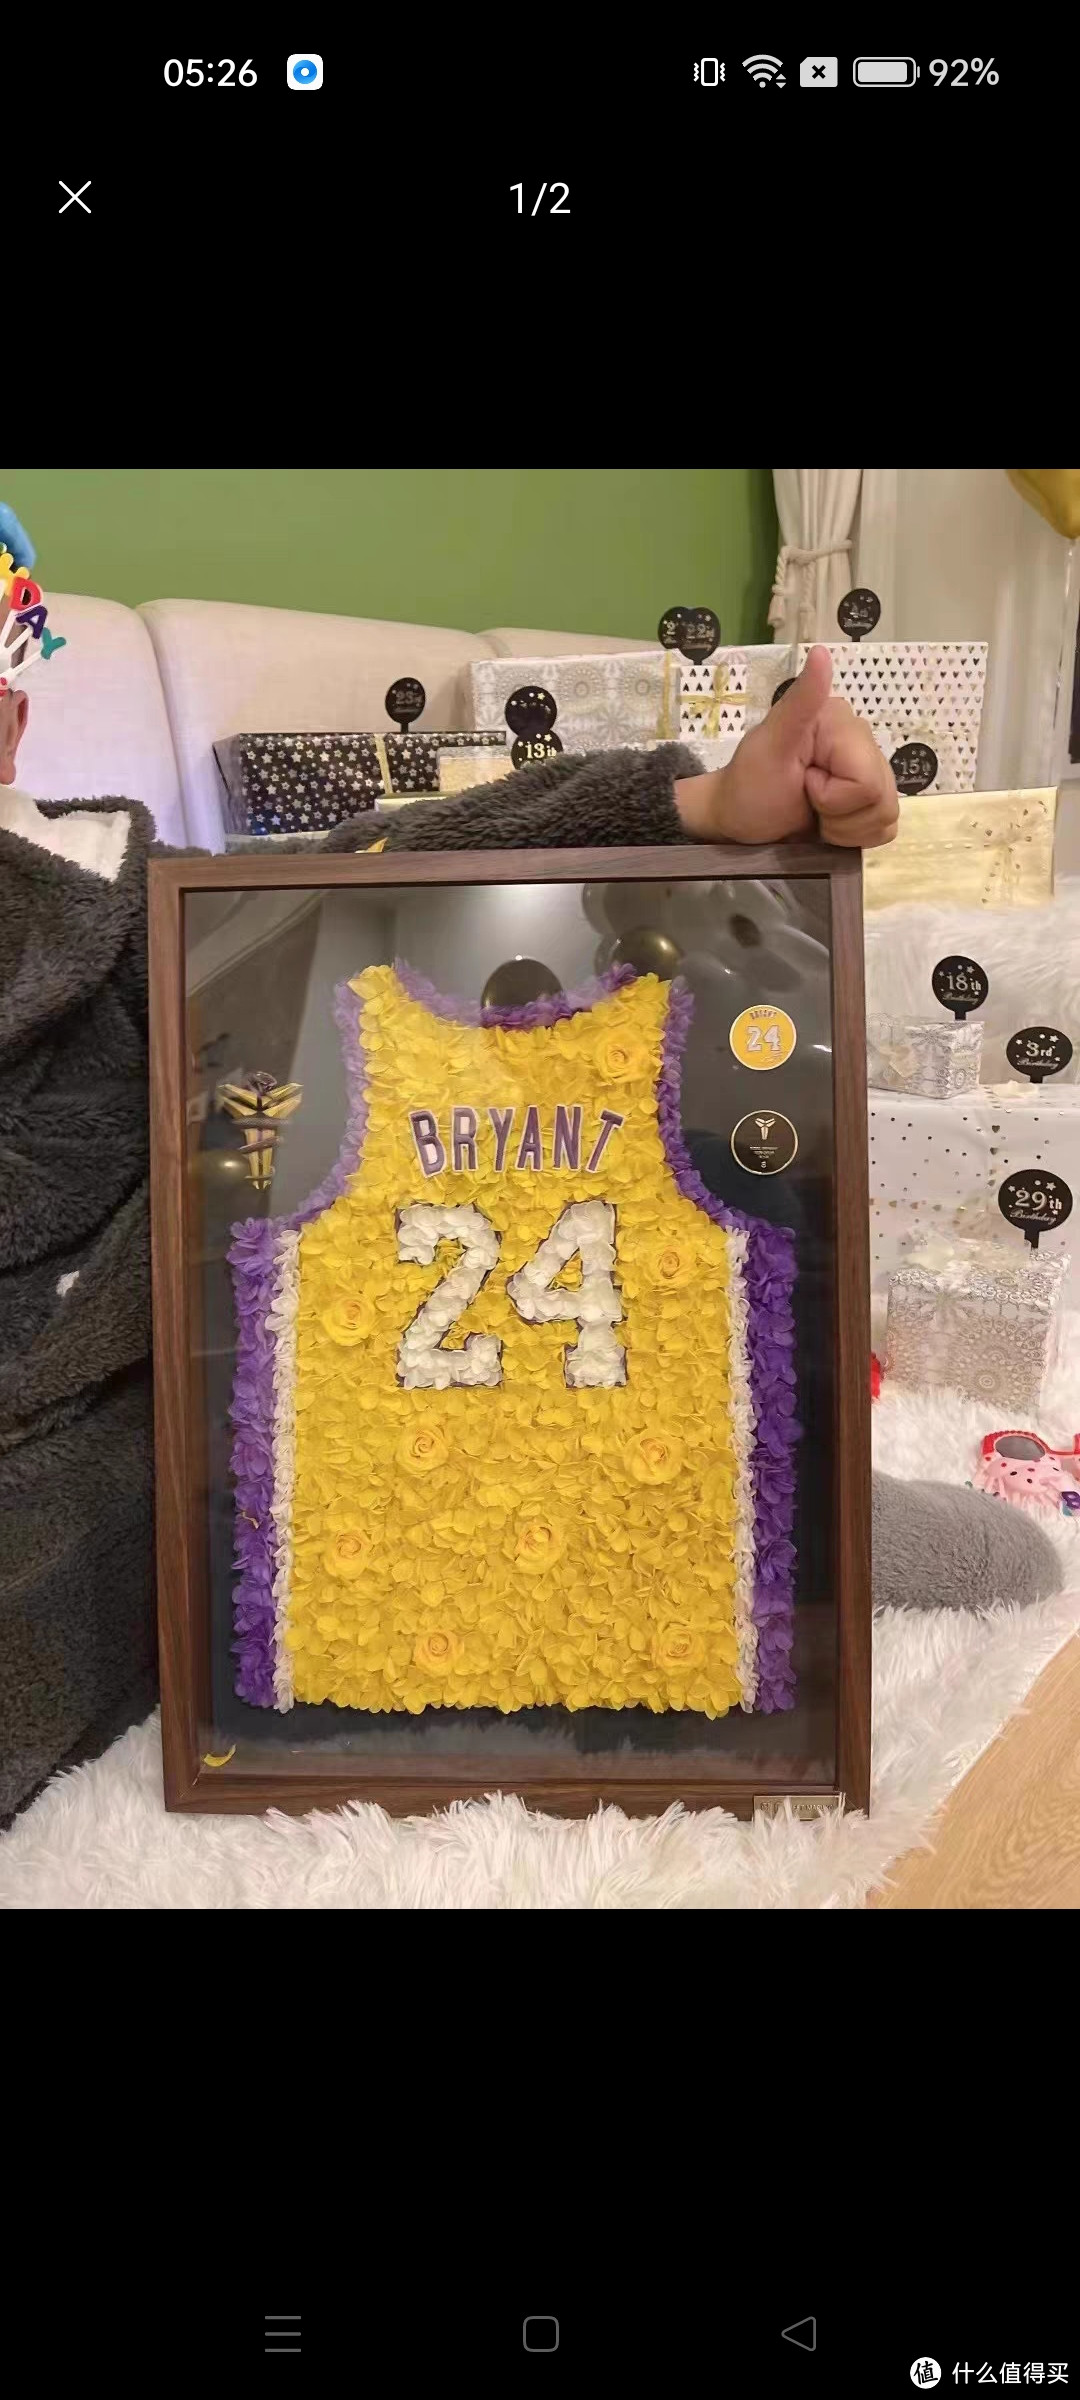 永生花定制篮球明星科比詹姆斯NBA球衣制作送男朋友男生生日礼物